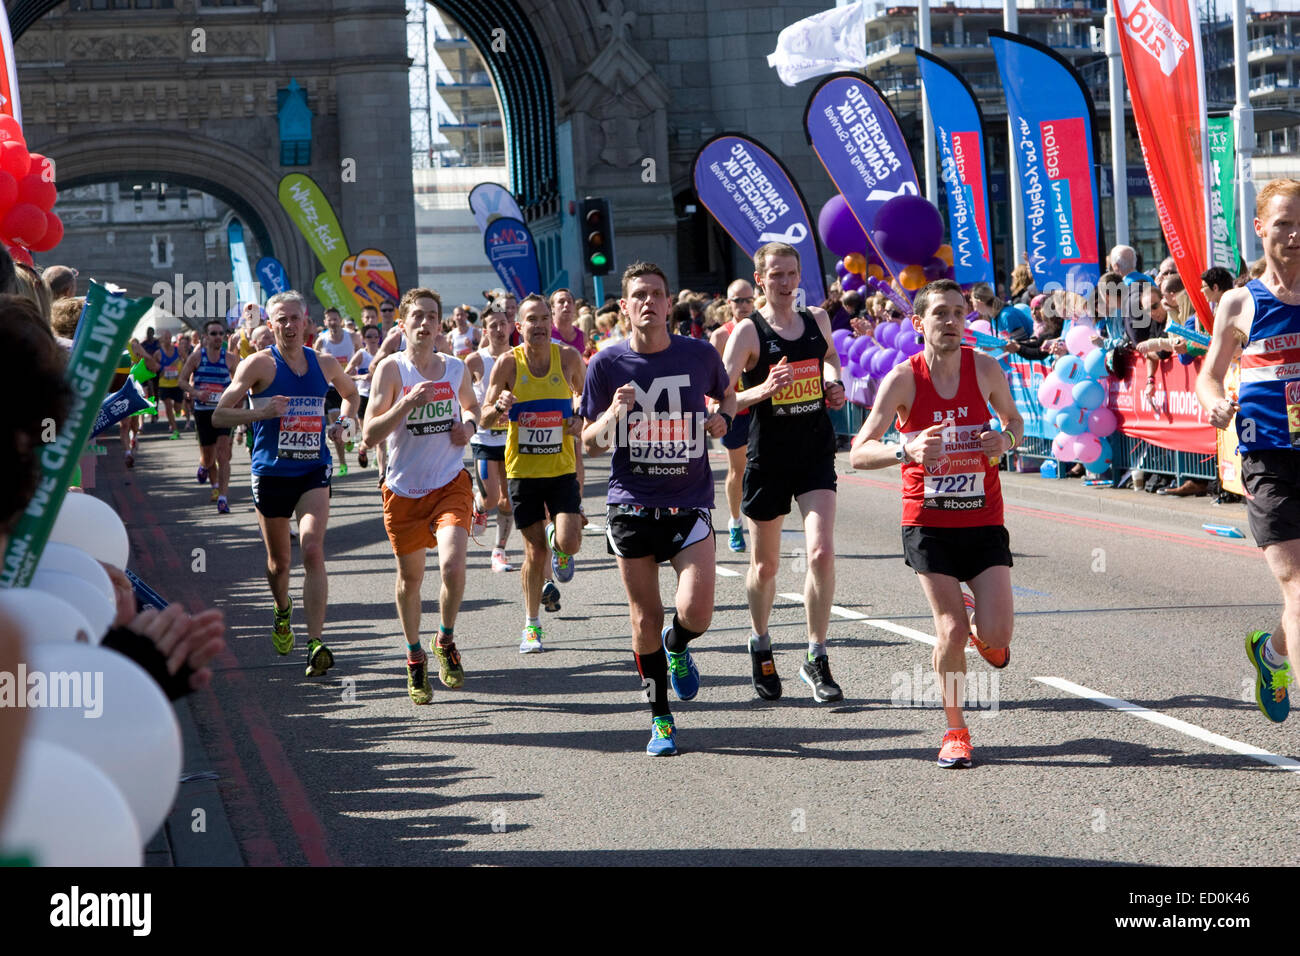 Londra - 13 aprile: Uomini non identificati correre la maratona di Londra il 13 aprile 2014 a Londra, Inghilterra, Regno Unito. La maratona è un annuale Foto Stock